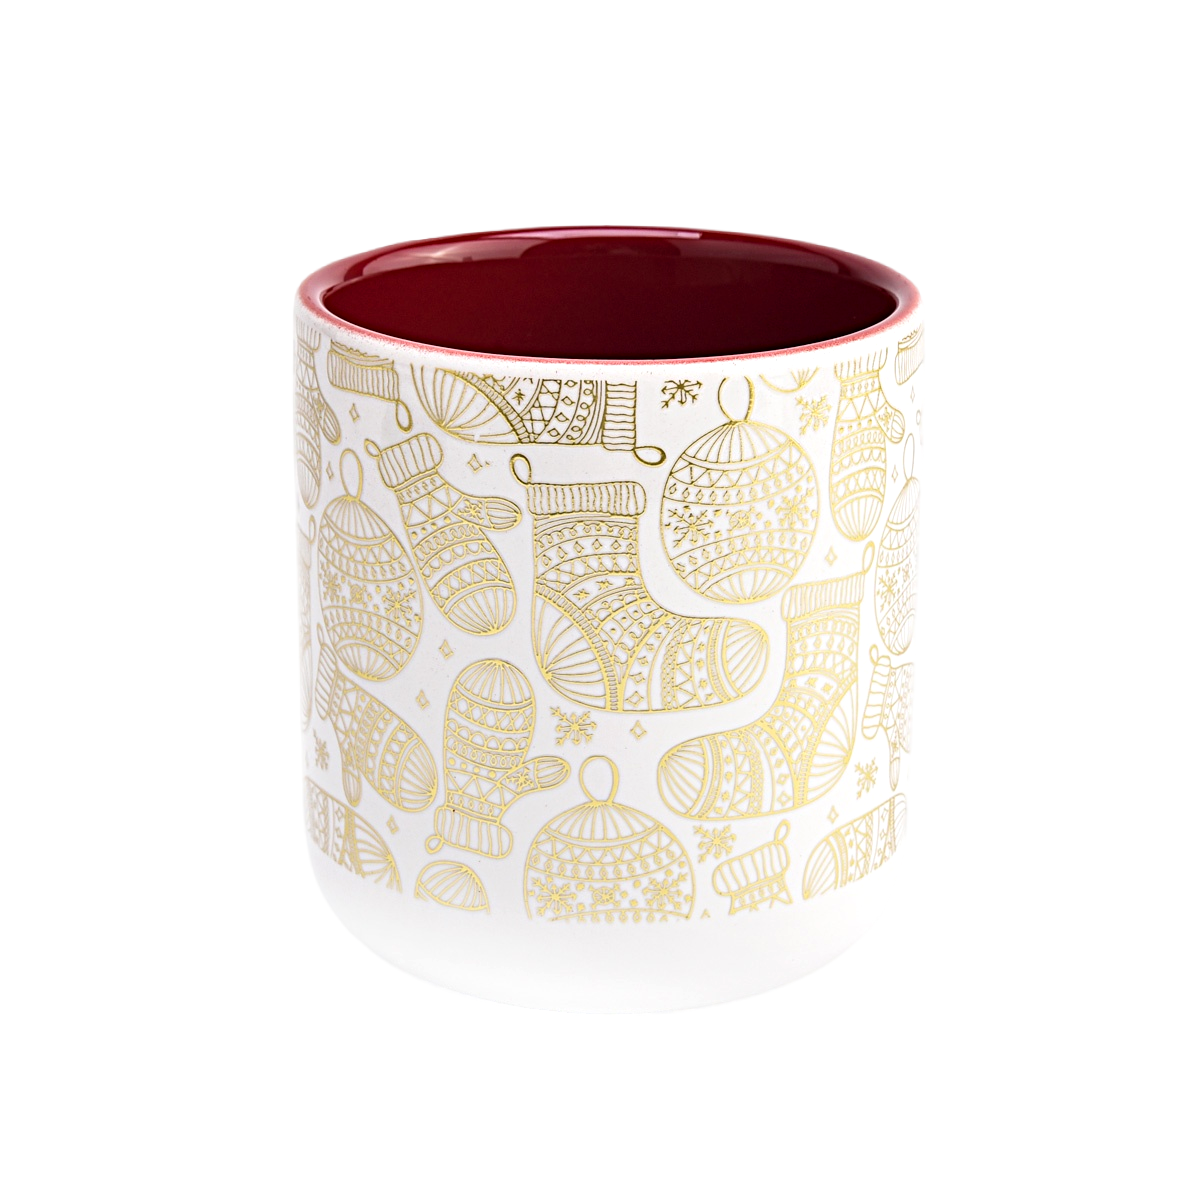 独特的圣诞贴花印刷豪华空陶瓷蜡烛罐